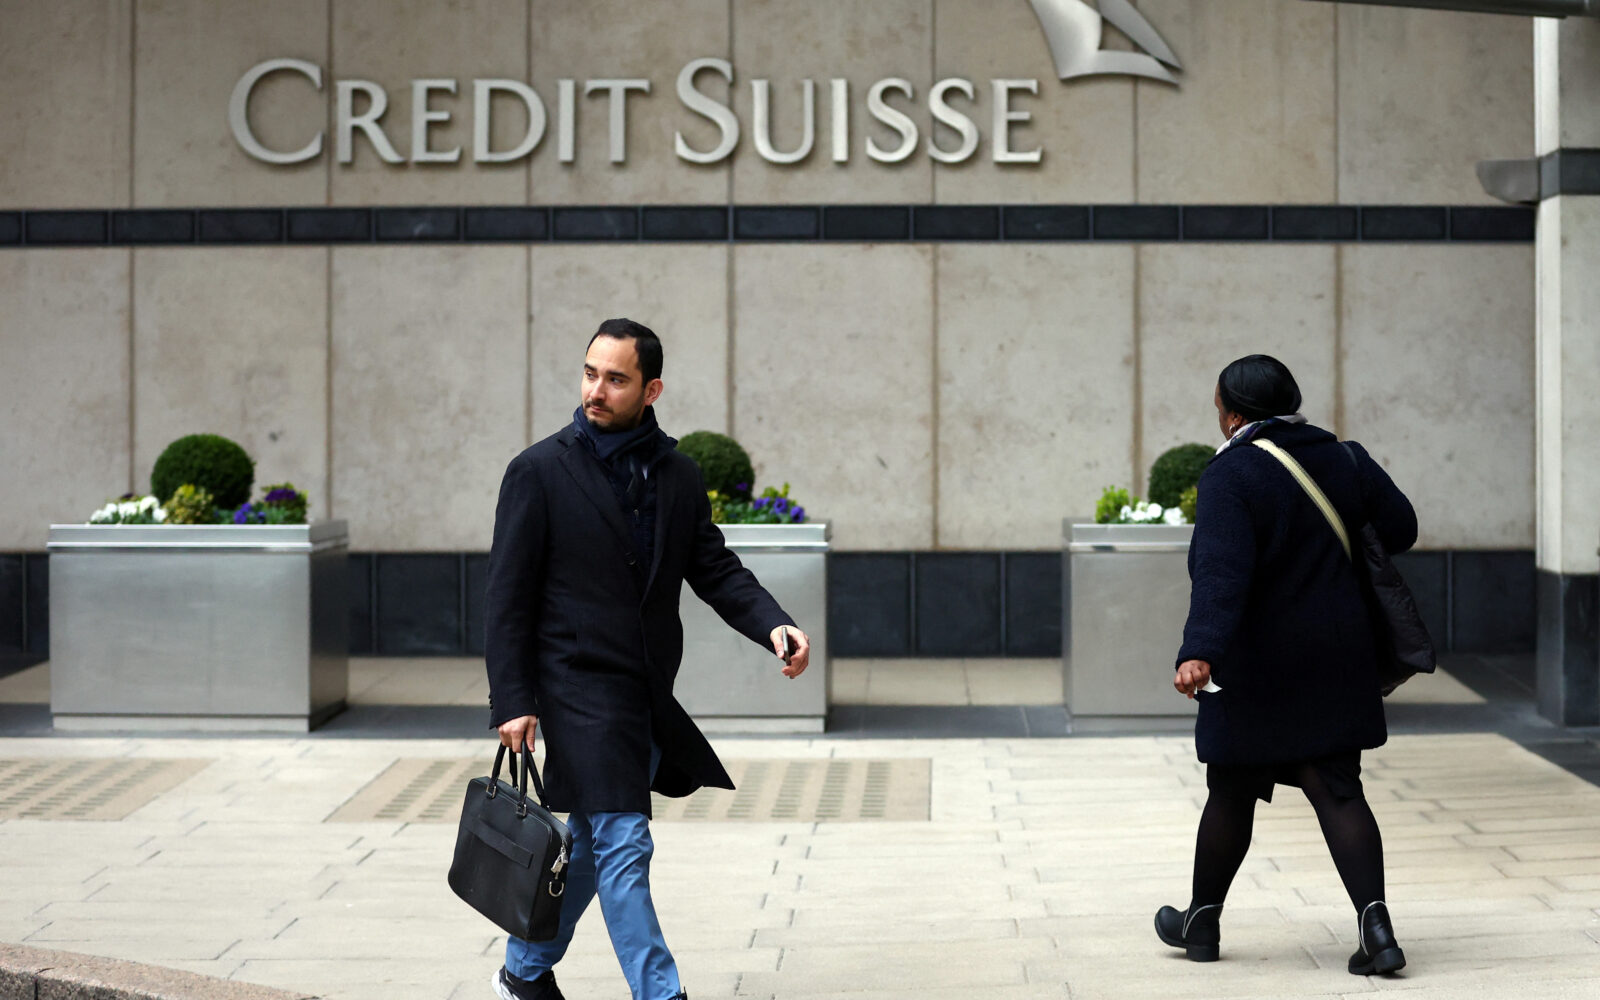 Švicarska za spašavanje Credit Suissea osigurala nevjerojatnu svotu novca.  Iznos odgovara trećini njihovog BDP-a